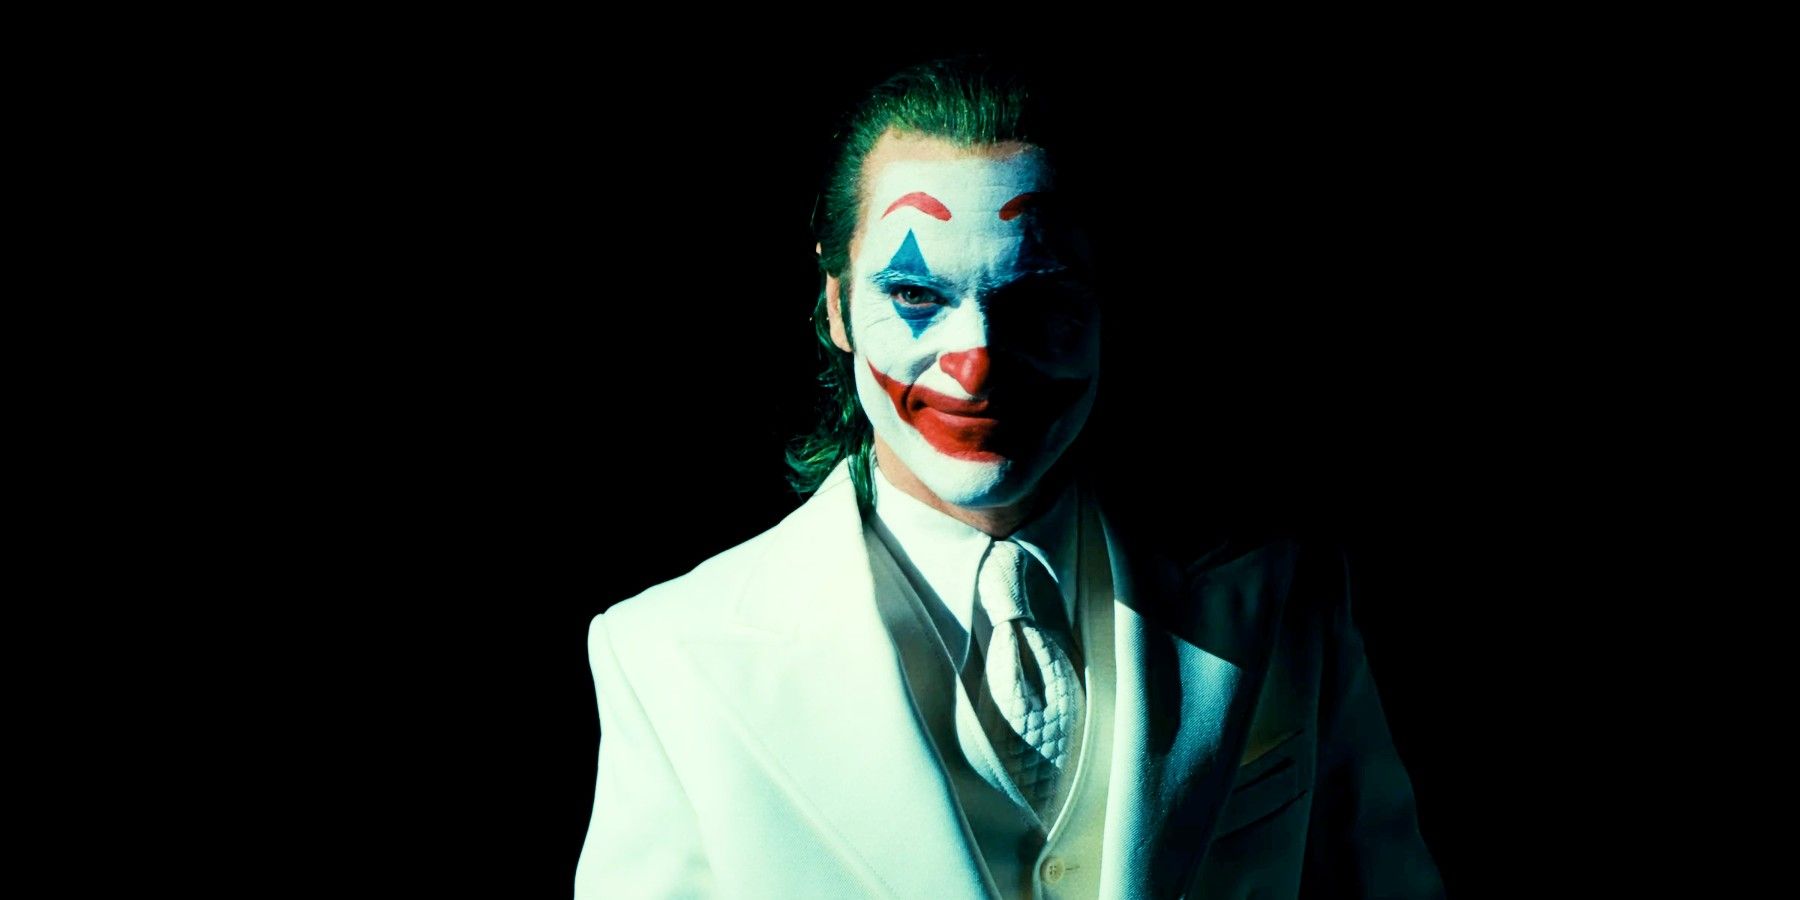 First Joker 2 Trailer Reveals How Joaquin Phoenix's Villain Meets Lady ...